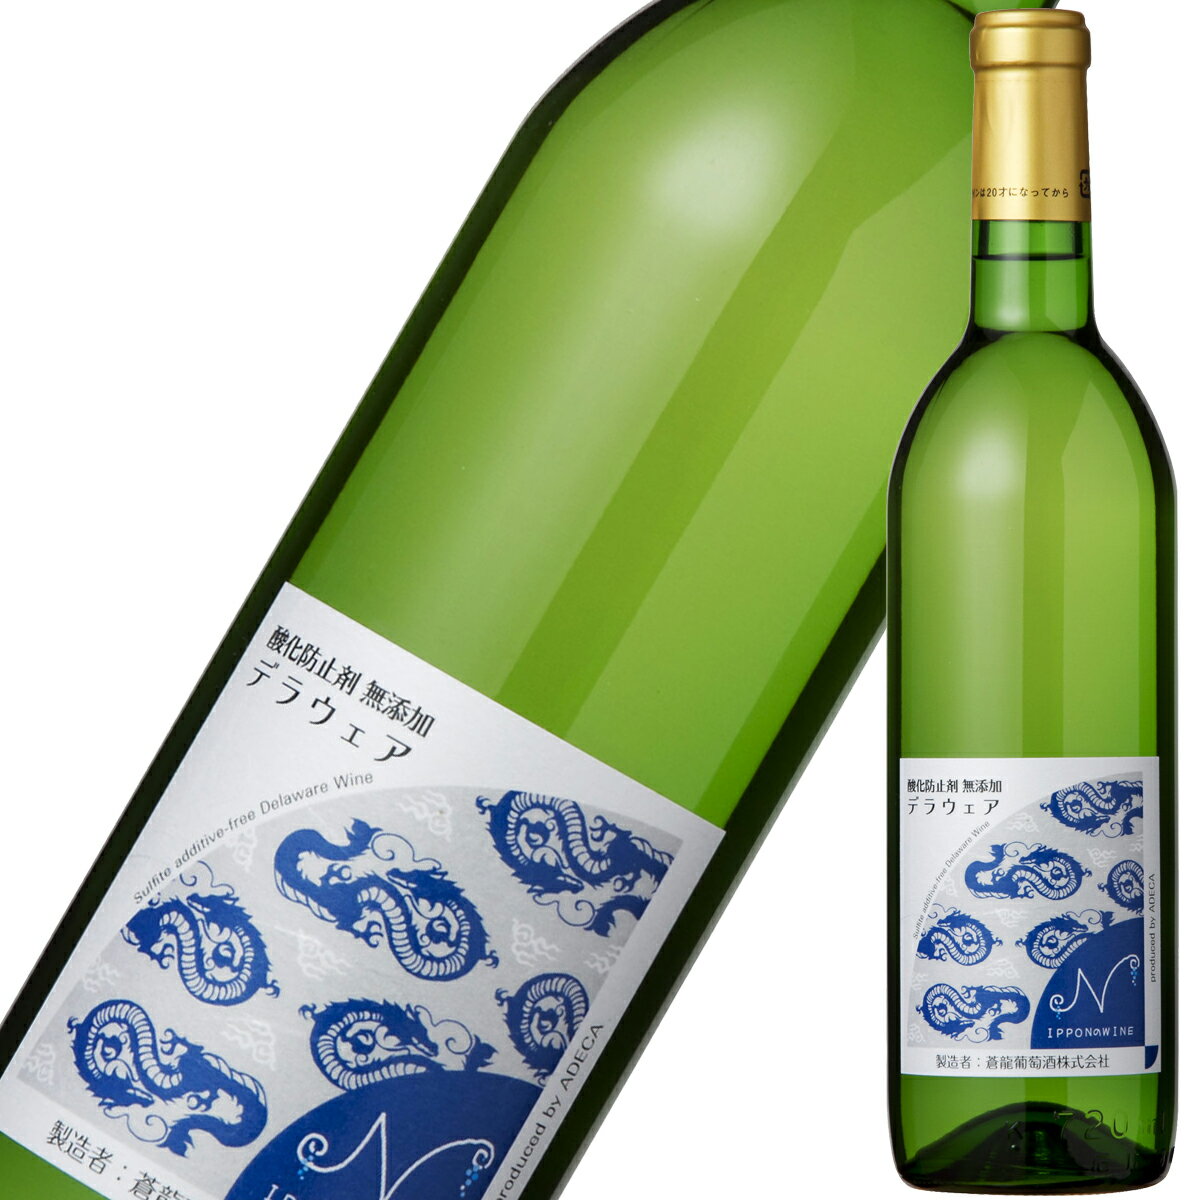 酸化防止剤無添加デラウェア 中口 白ワイン 720ml 日本ワイン 国産 日本 アデカ ワイン プレゼント ギフト 父の日